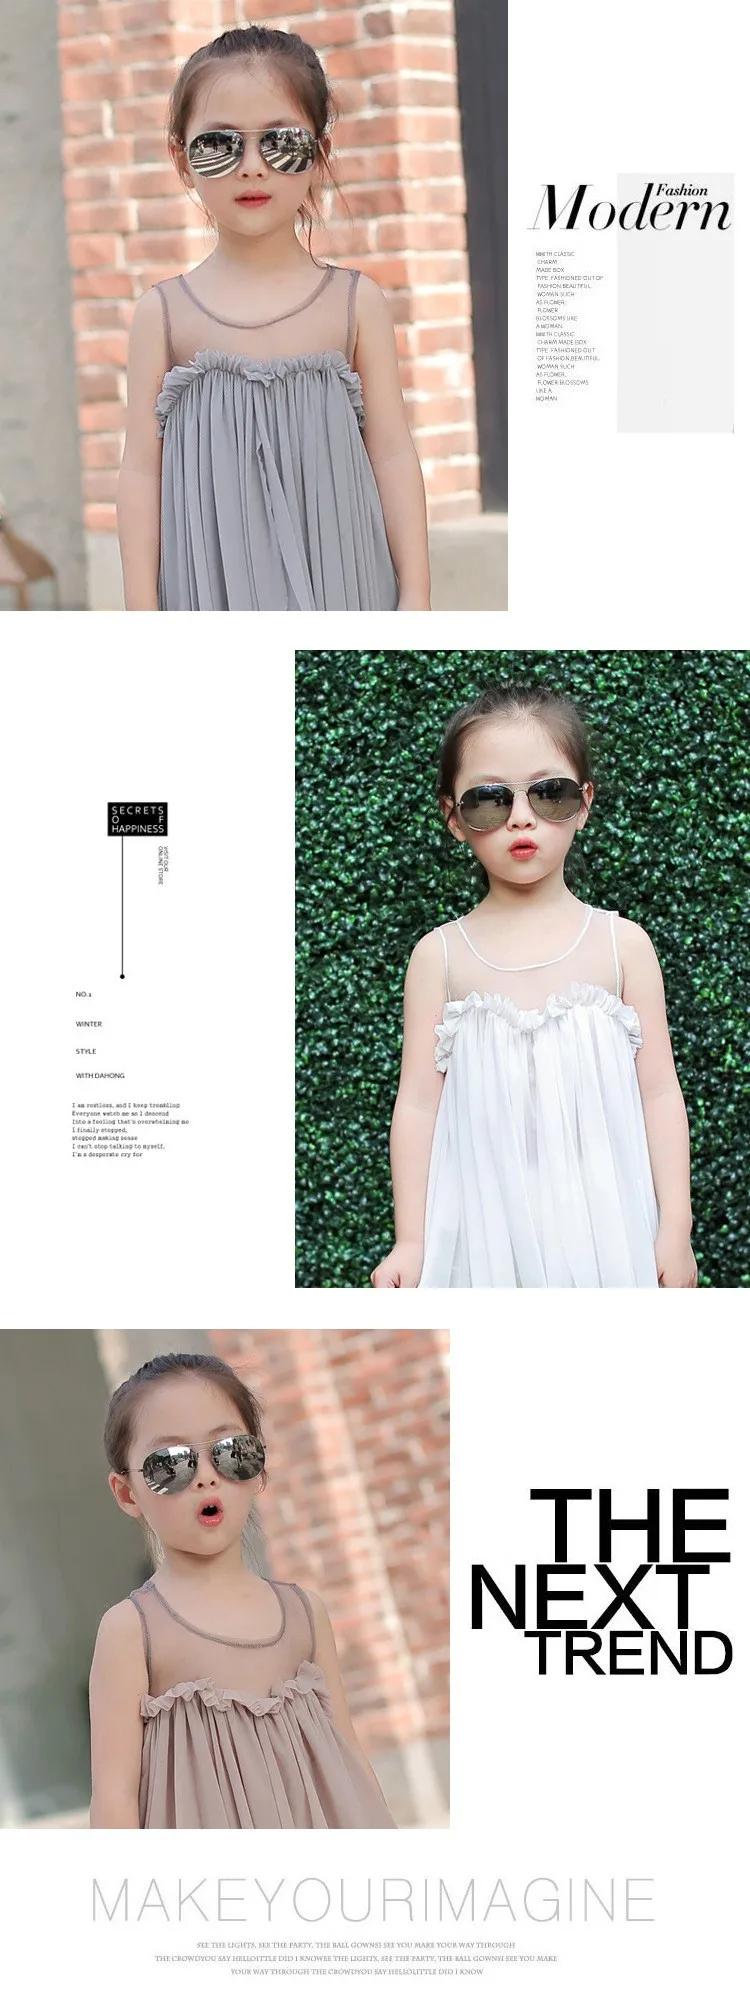 Круглая рамка в стиле ретро очки для childrenarrow детская Sunglasses2018 Новая модная Корейская солнцезащитные очки UV400